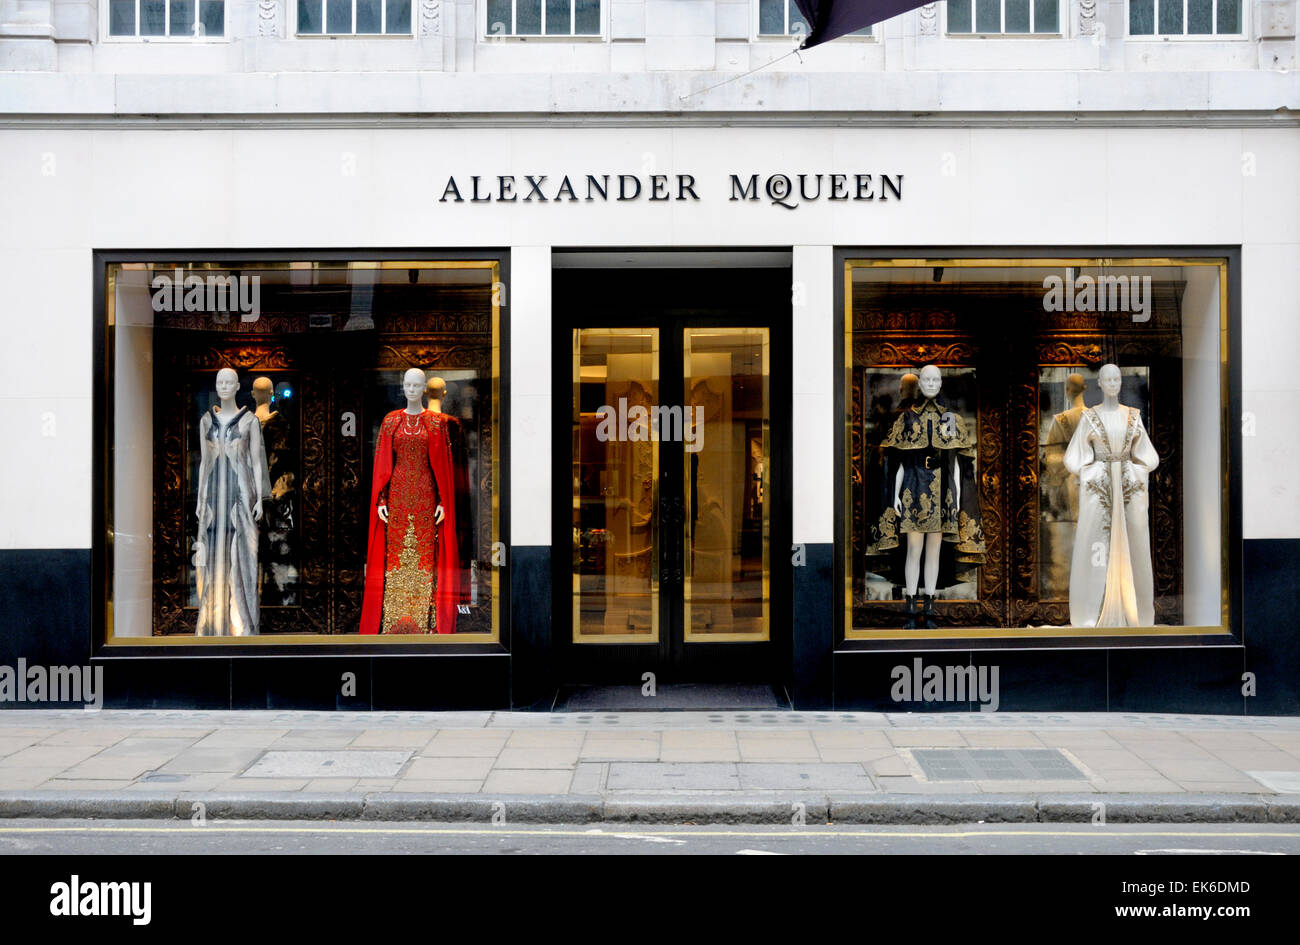 London, England, UK. Alexander McQueen 